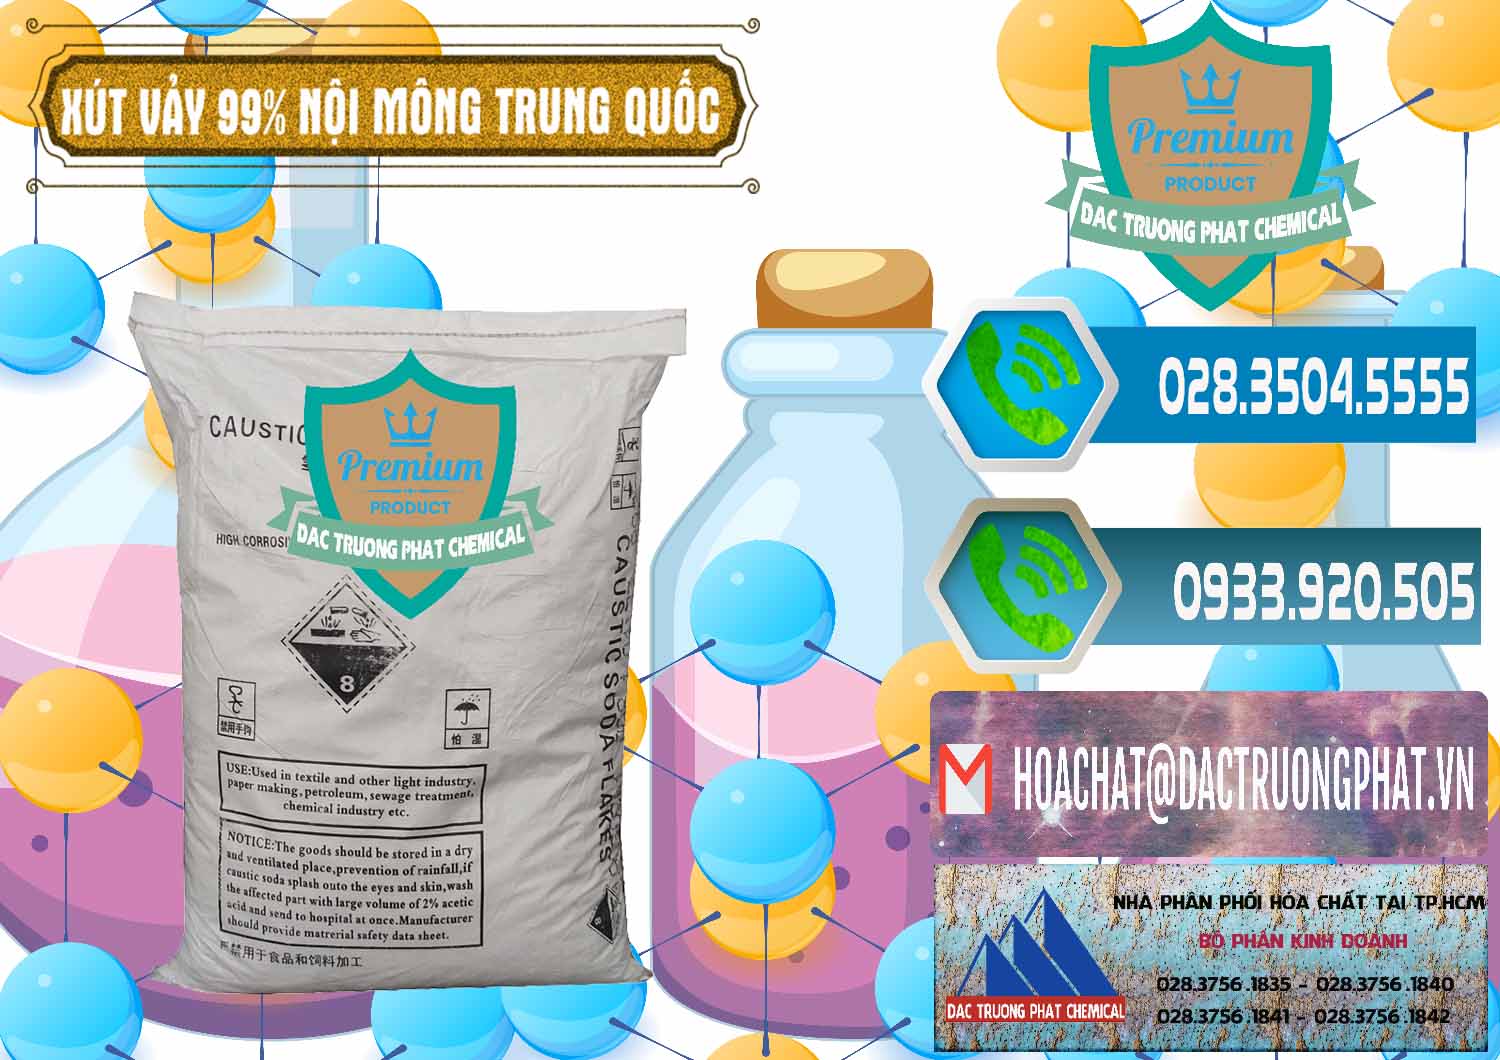 Đơn vị bán và cung ứng Xút Vảy - NaOH Vảy 99% Nội Mông Trung Quốc China - 0228 - Cty kinh doanh - phân phối hóa chất tại TP.HCM - congtyhoachat.net